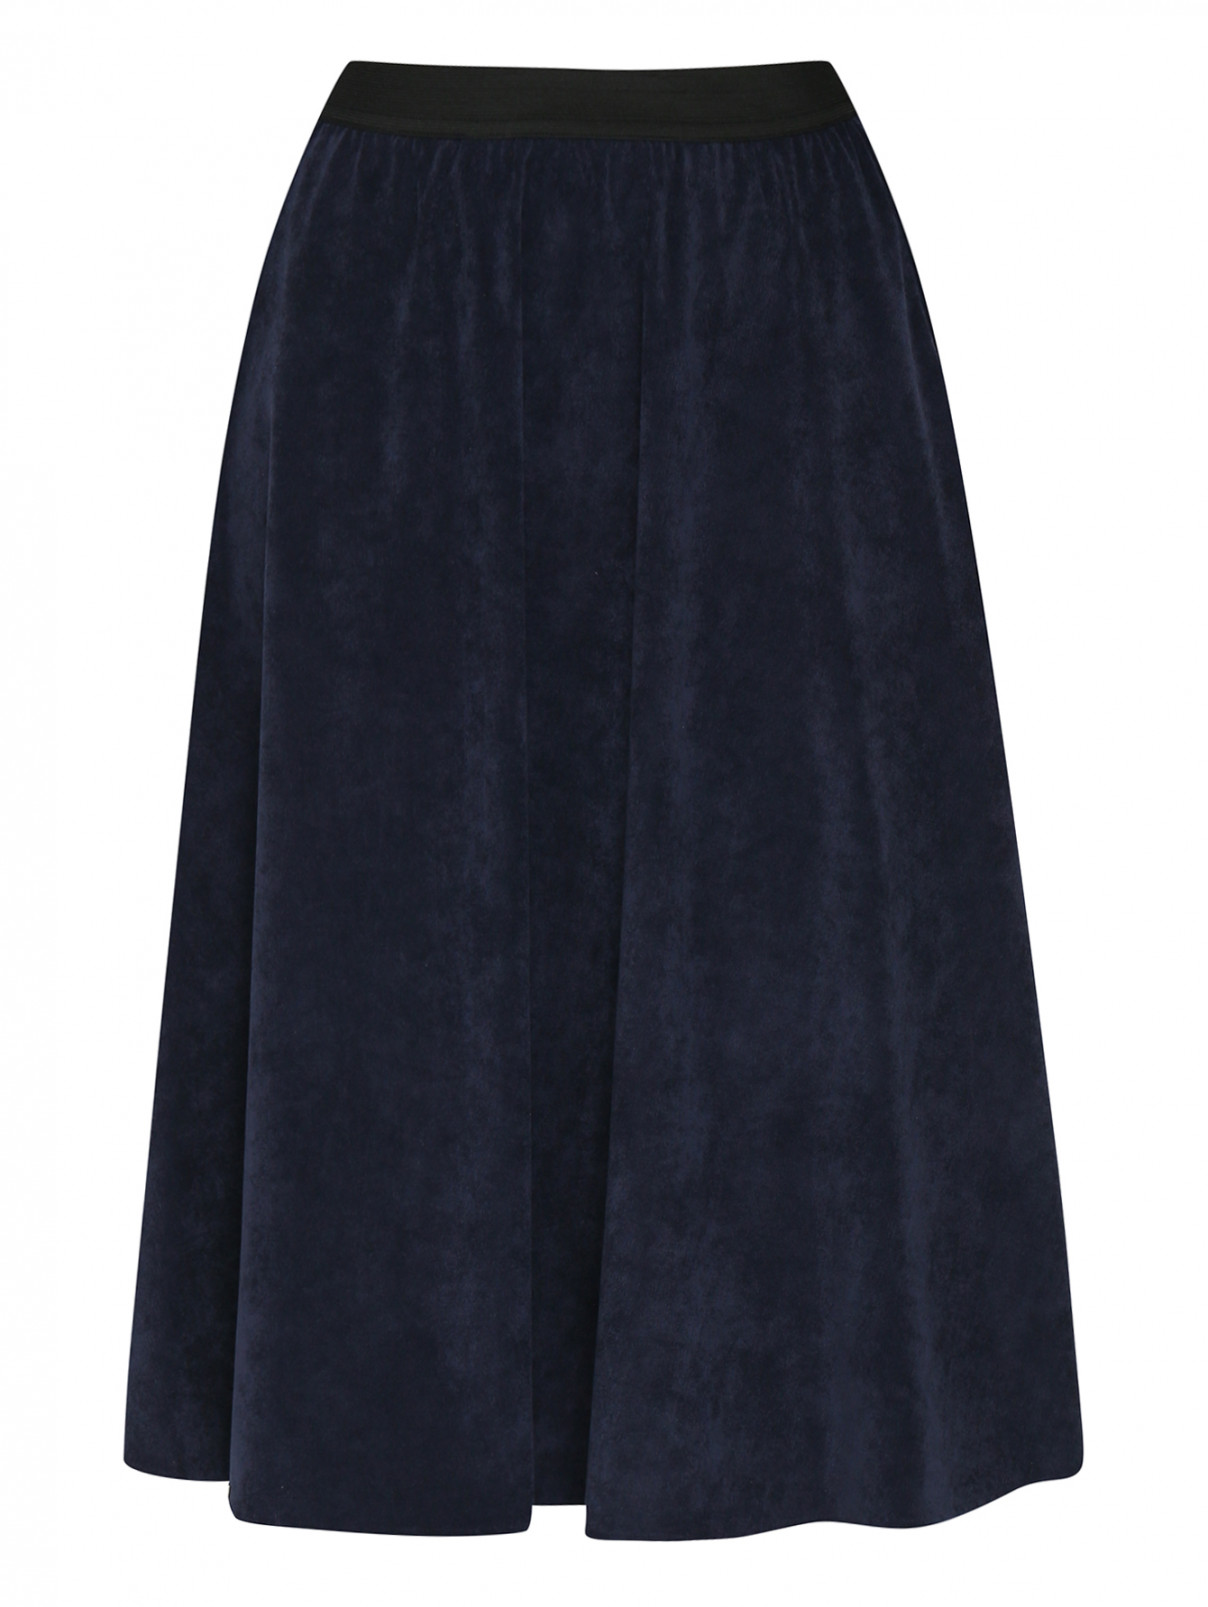 Вельветовая юбка-миди на резинке Persona by Marina Rinaldi  –  Общий вид  – Цвет:  Синий